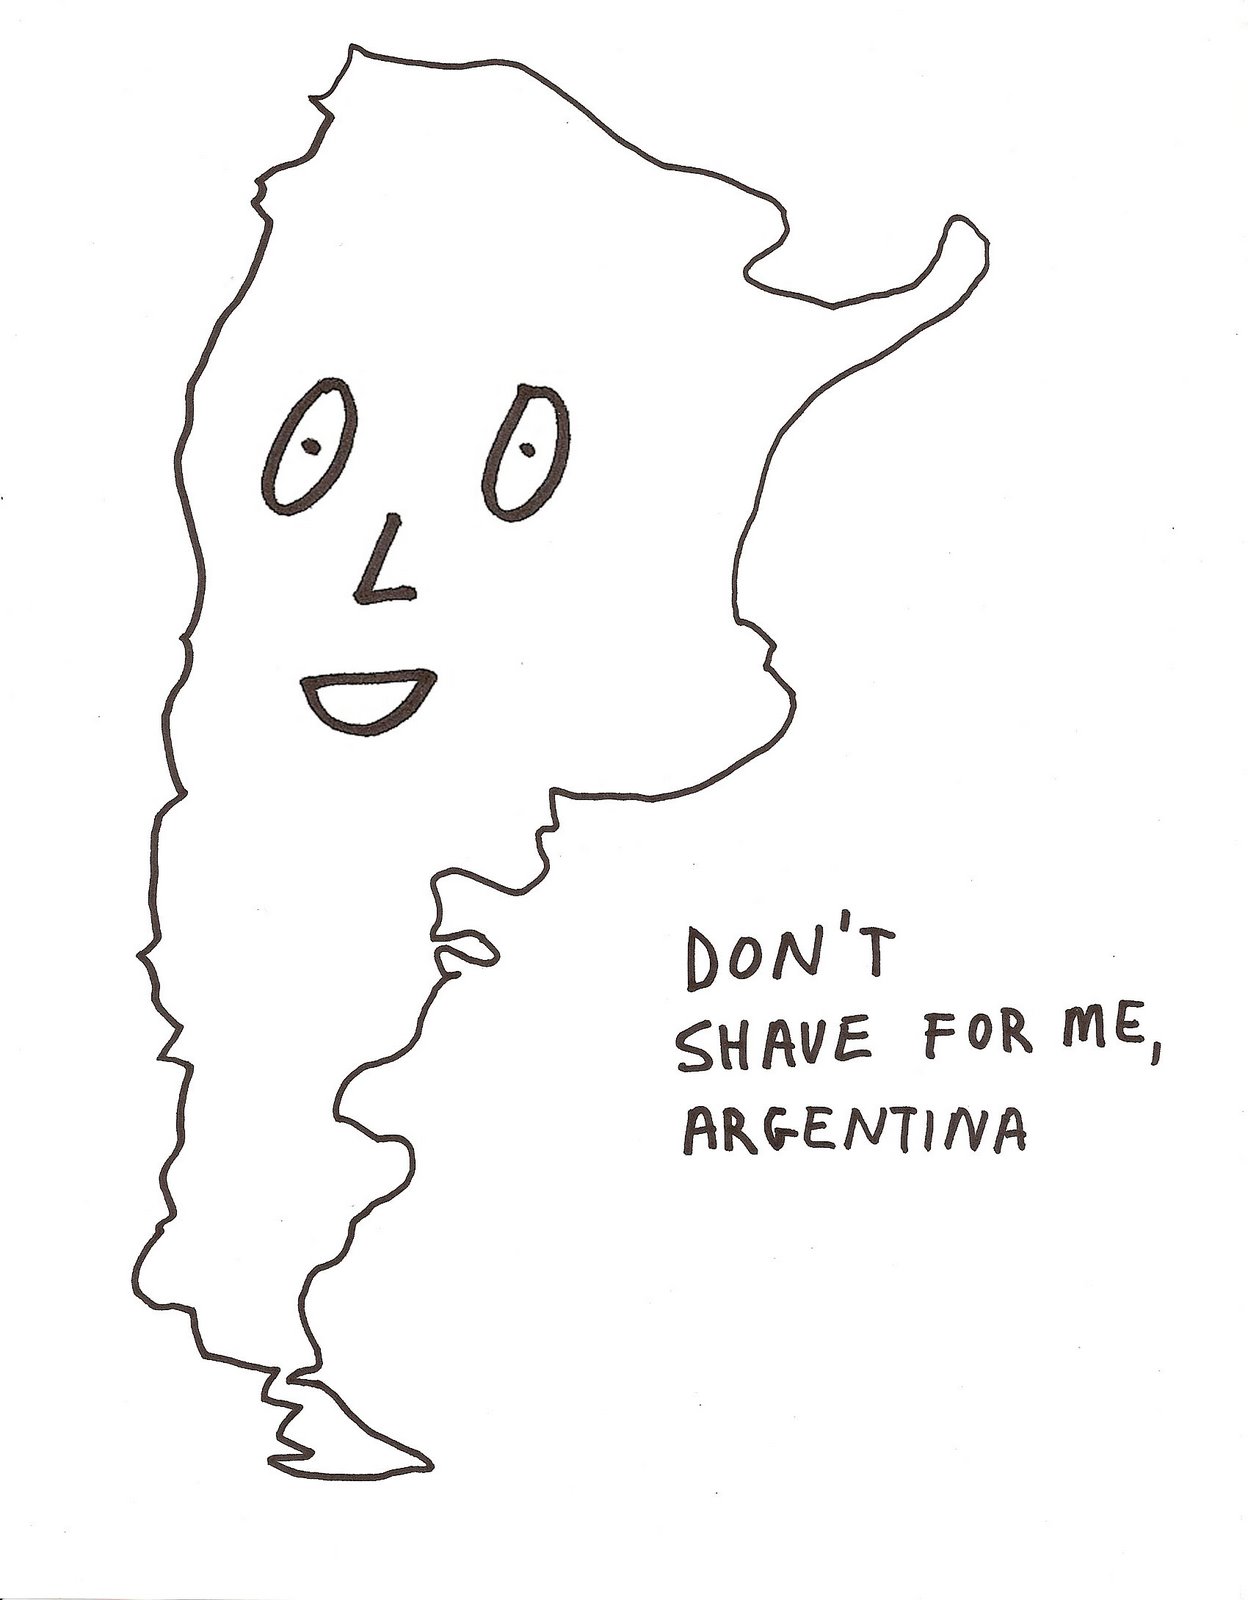 [ArgentinaShave.jpg]